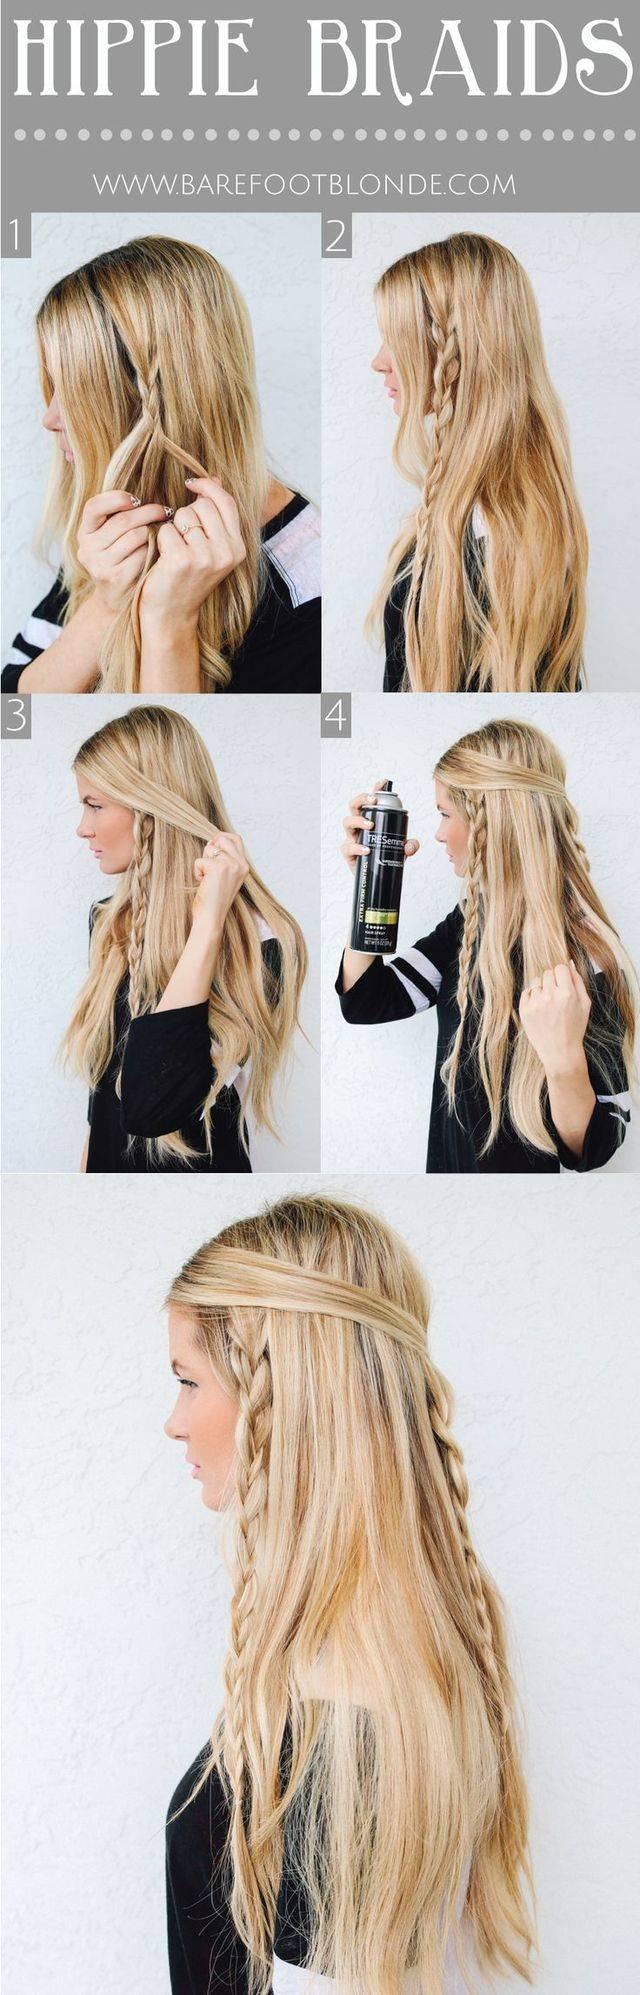 รูปภาพ:http://pophaircuts.com/images/2015/09/boho-hairstyles-with-braids-%E2%80%93-bun-updos-other-great-new-stuff-to-try-out8.jpg